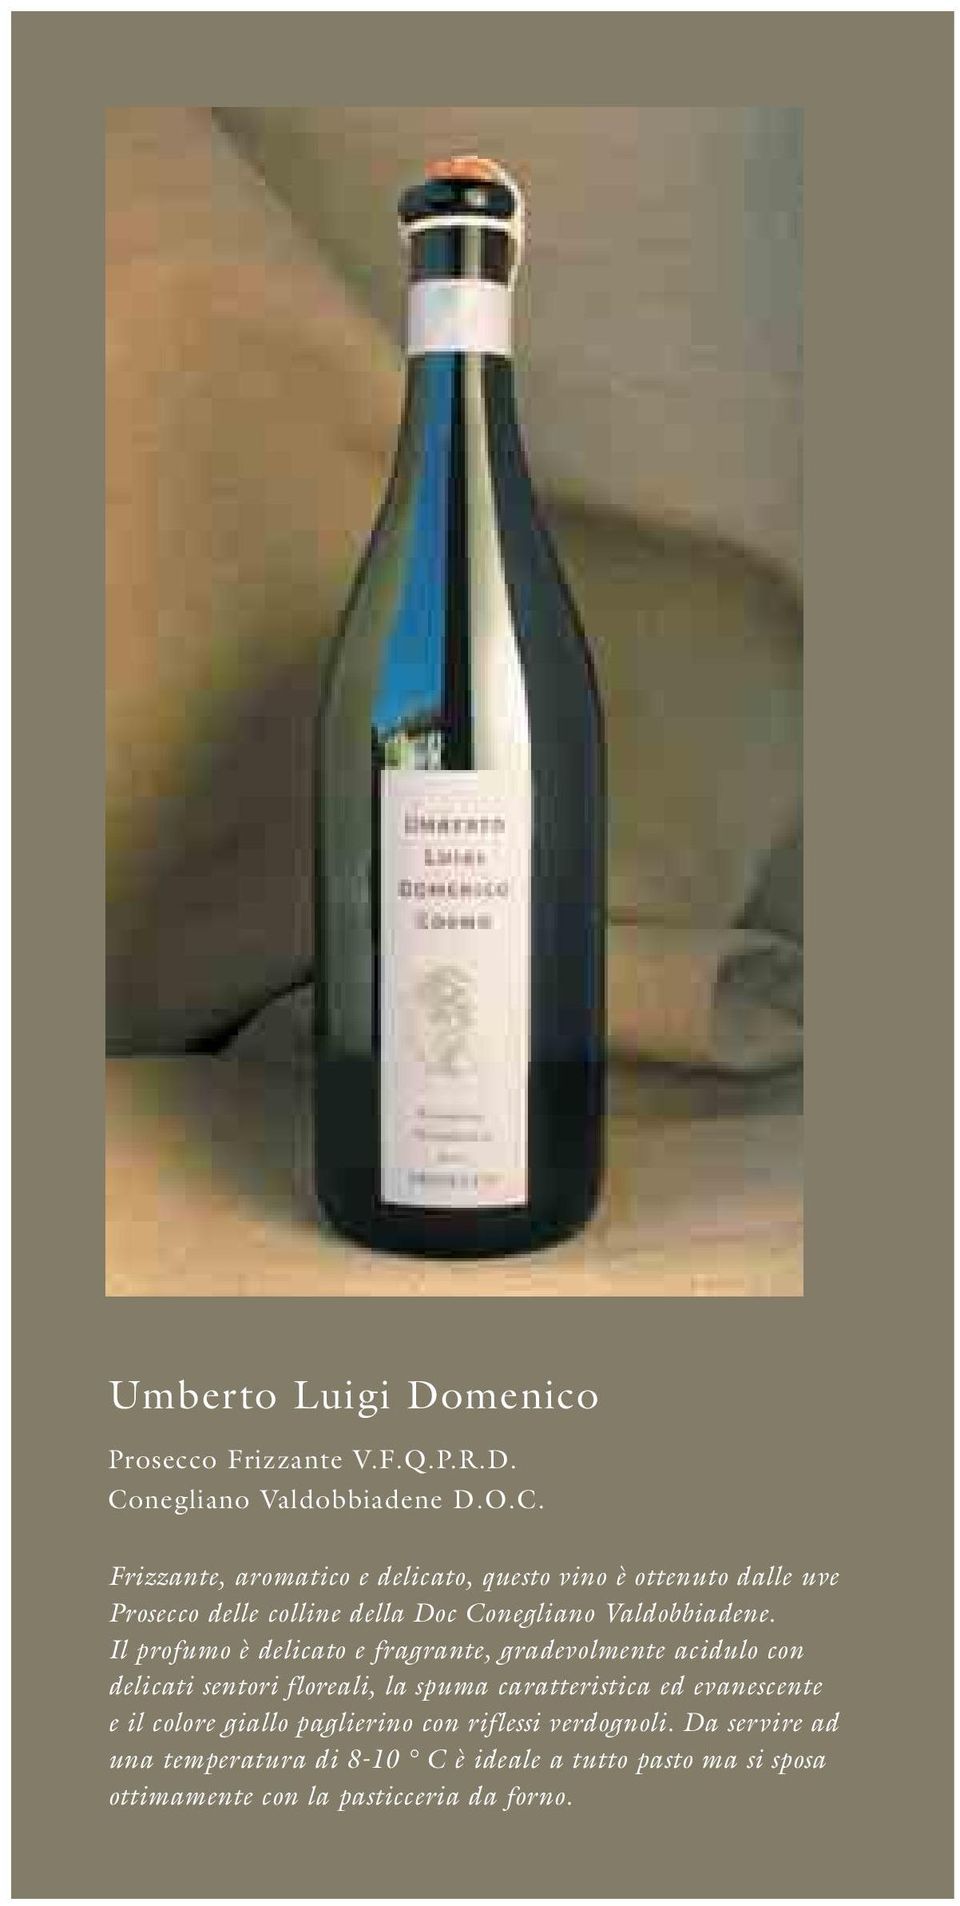 Frizzante, aromatico e delicato, questo vino è ottenuto dalle uve Prosecco delle colline della Doc Conegliano Valdobbiadene.